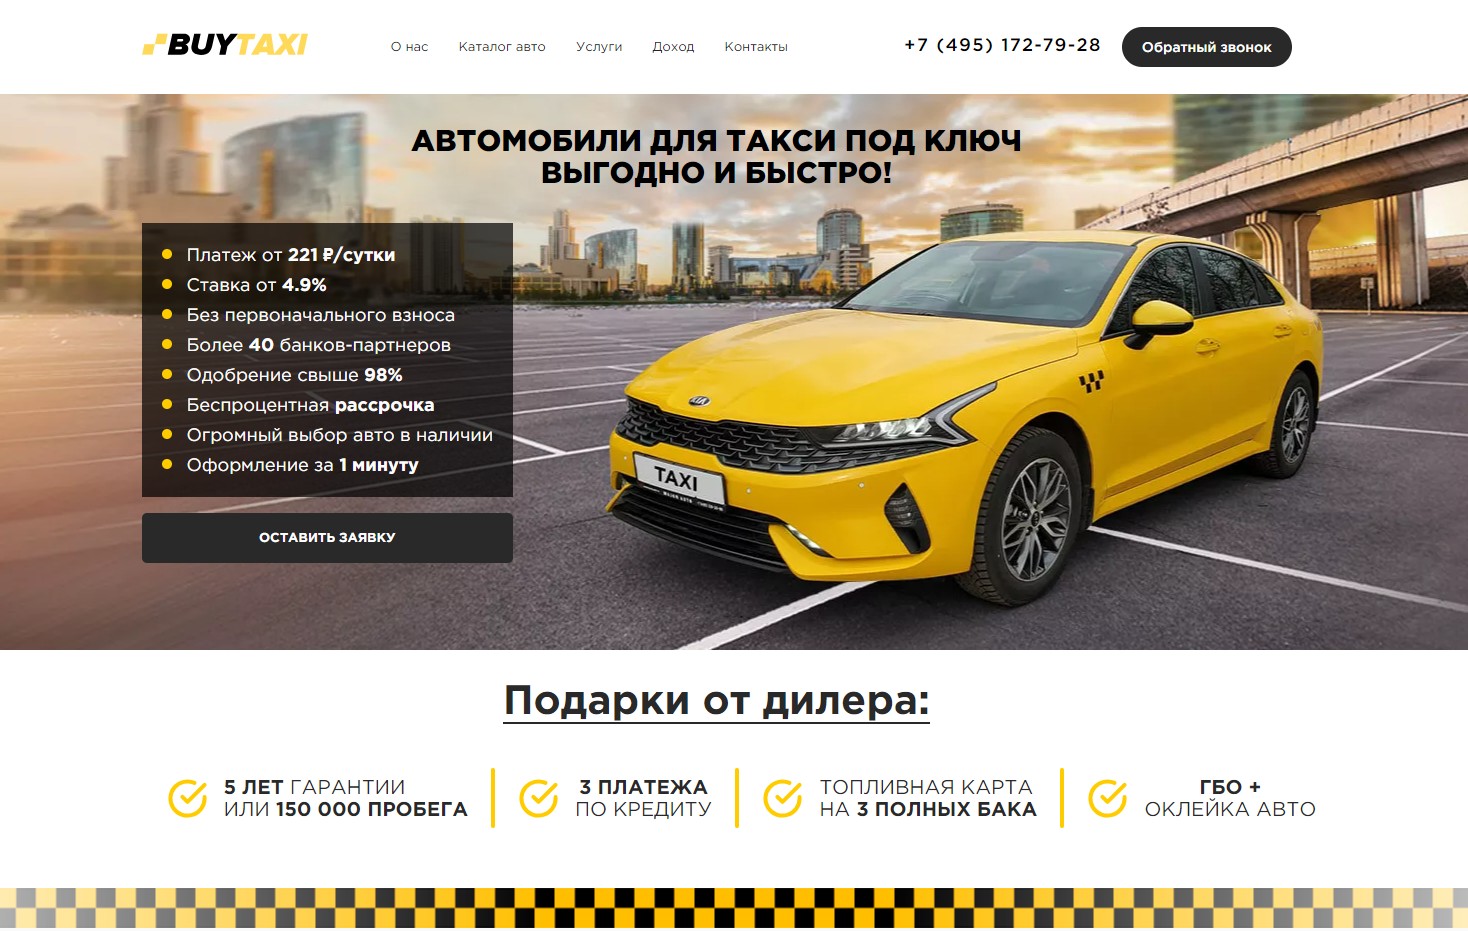 Автосалон BUYTAXI: информация, отзывы покупателей и рейтинг